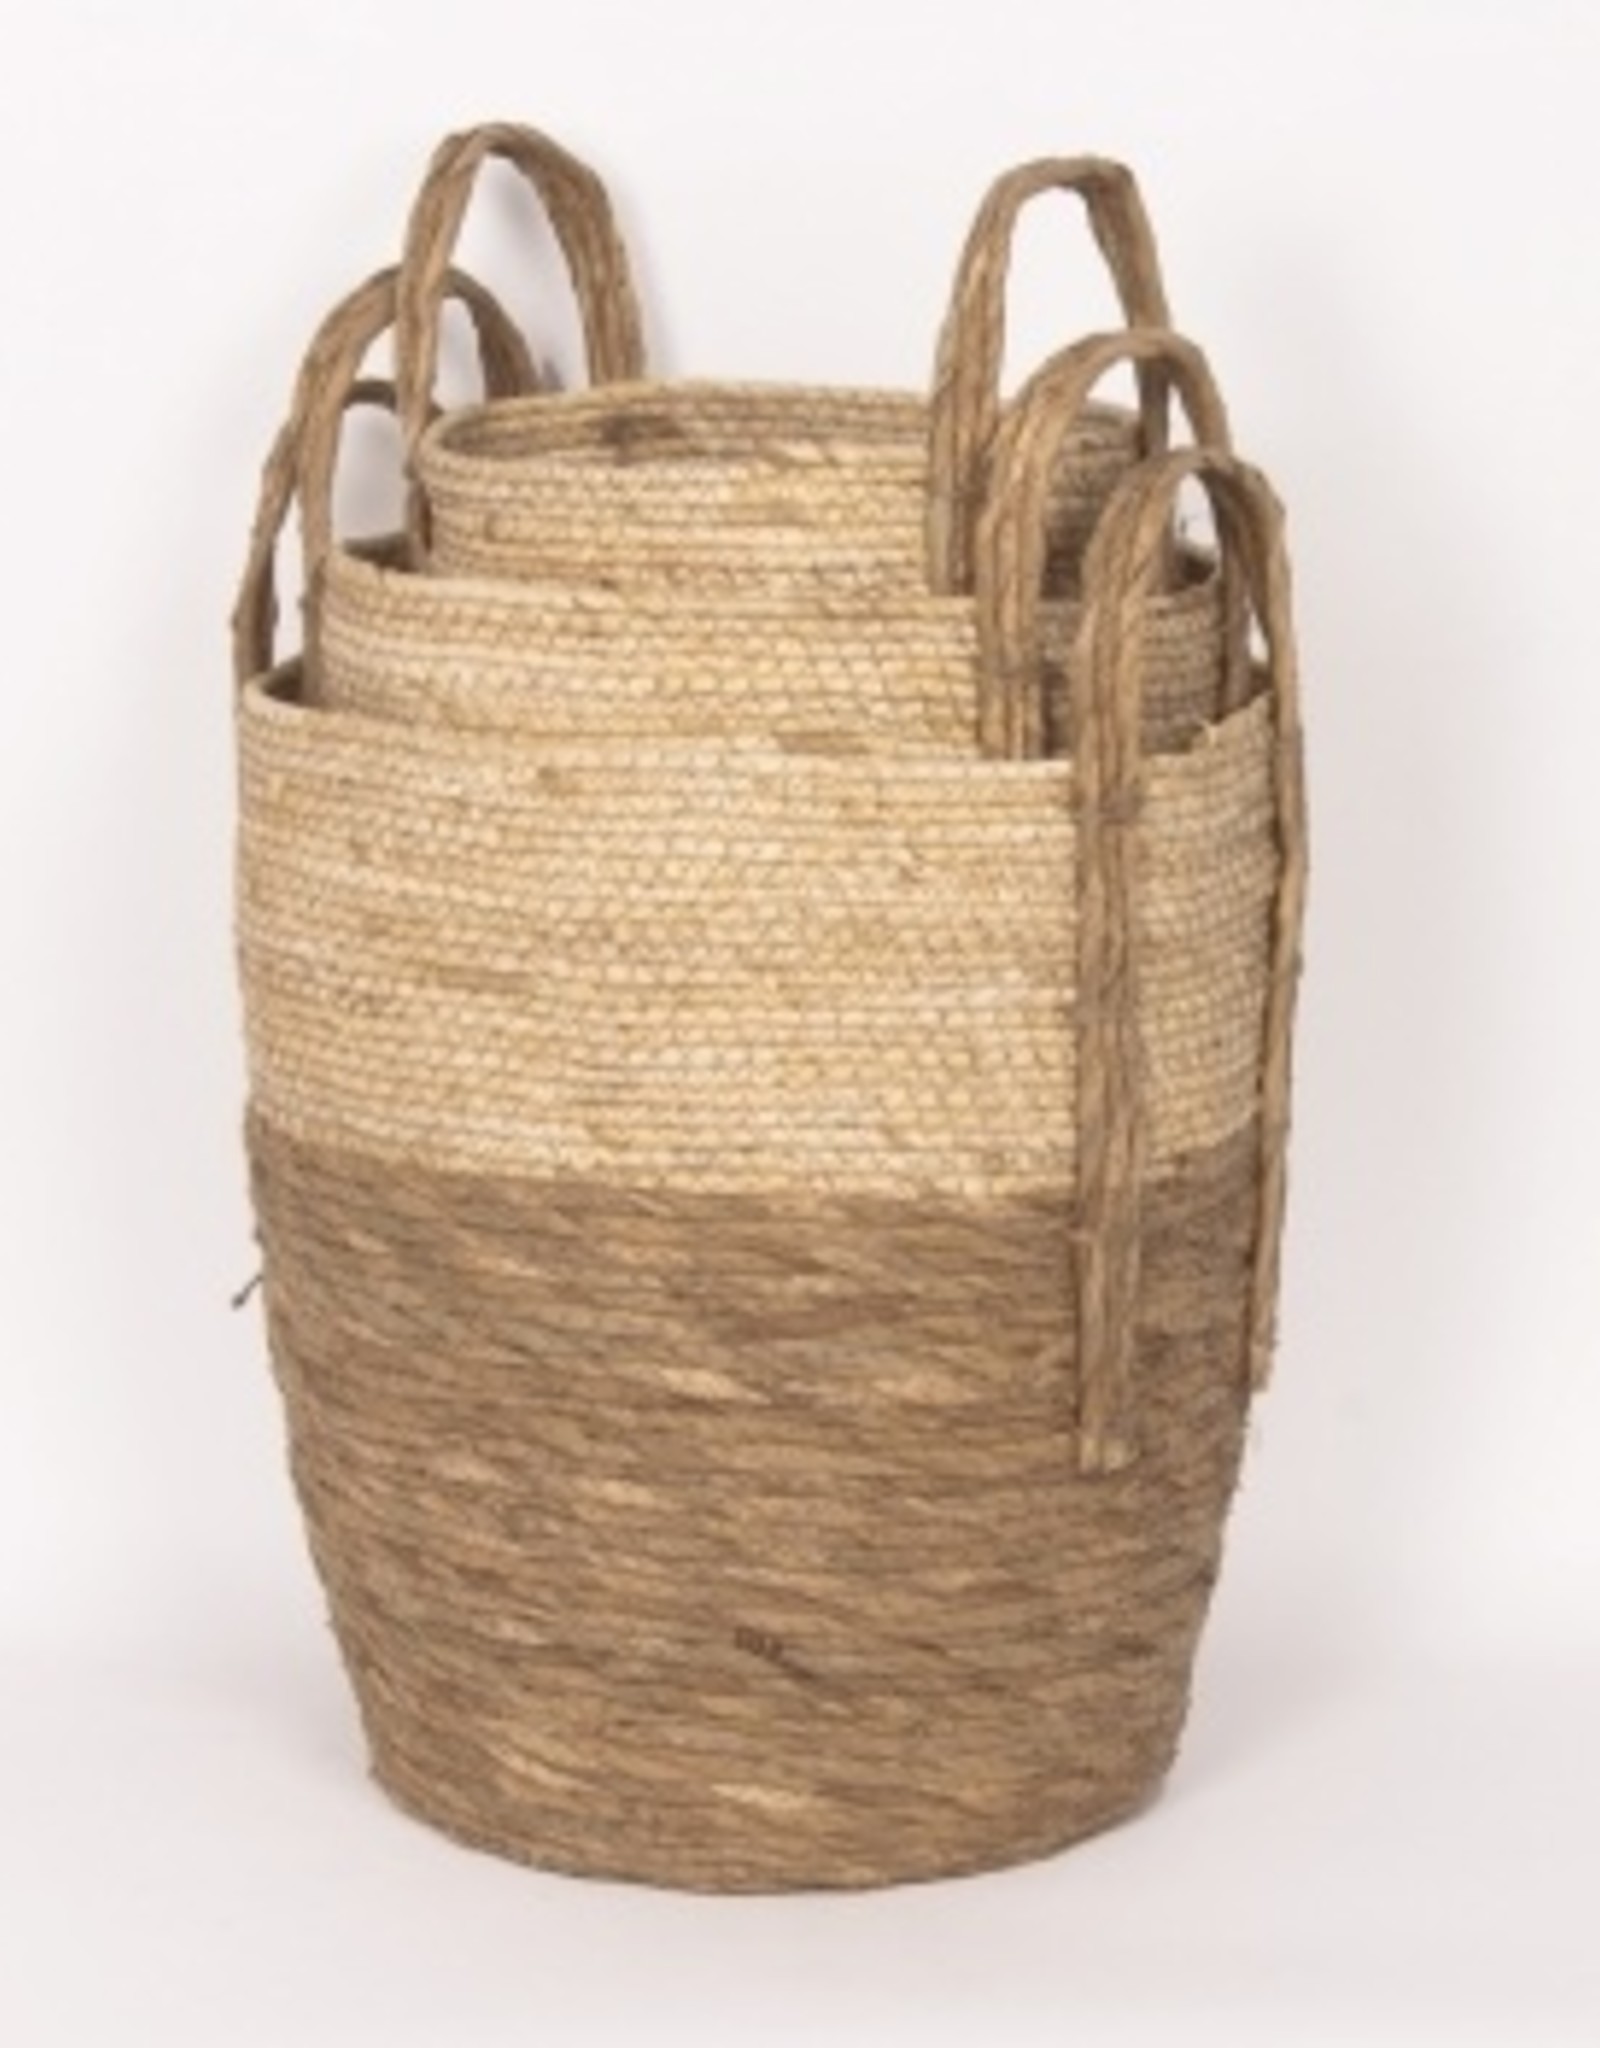 Beige/Natural Straw Basket (medium)